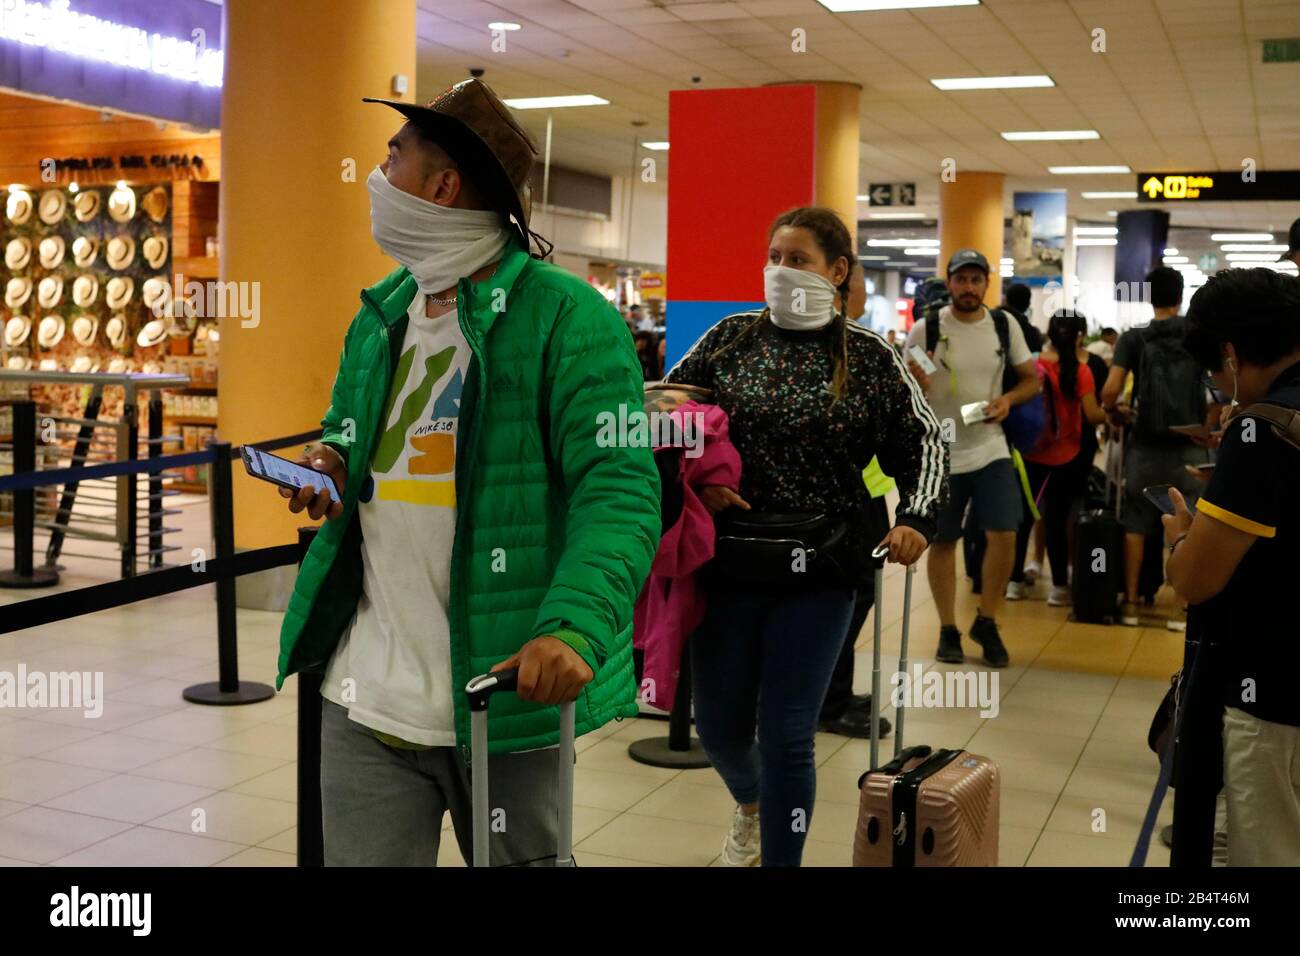 Algebraico Jarra judío Callao, Perú. 6 de marzo de 2020. Los pasajeros usan máscaras protectoras  en el área de embarque de vuelos internacionales en el Aeropuerto  Internacional Jorge Chávez, en la provincia constitucional del Callao,